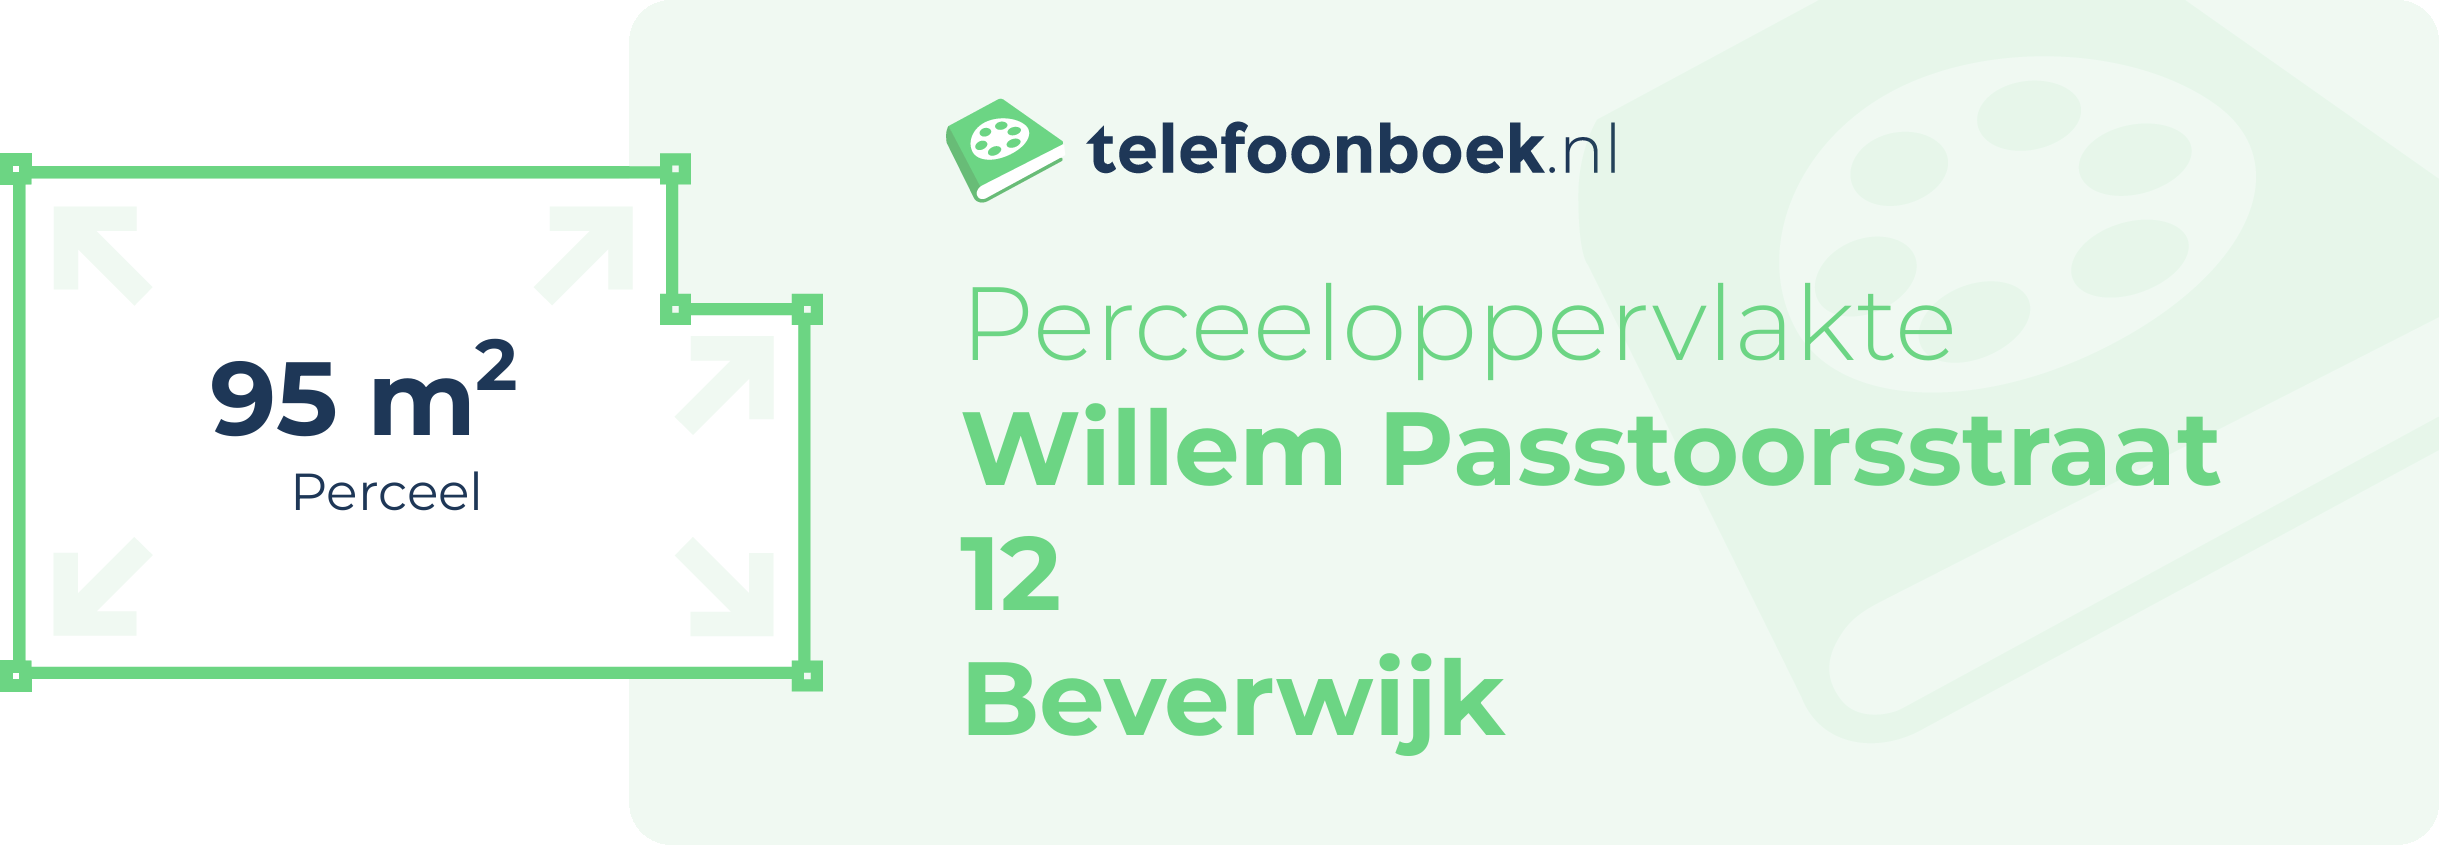 Perceeloppervlakte Willem Passtoorsstraat 12 Beverwijk